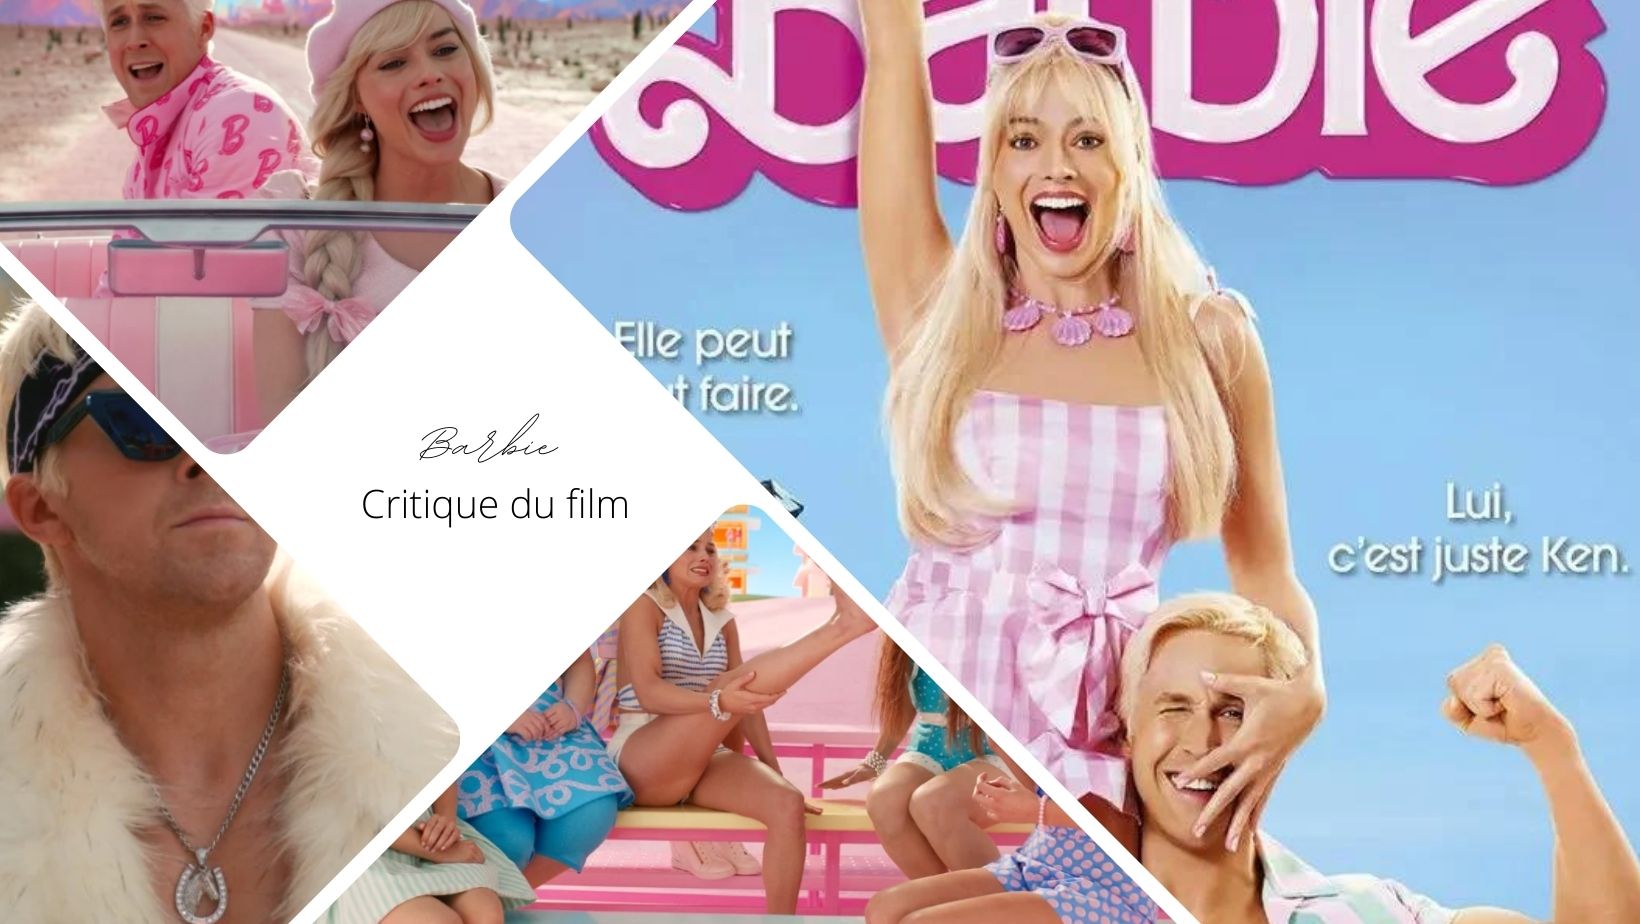 Barbie avec Margot Robbie - Critique du film